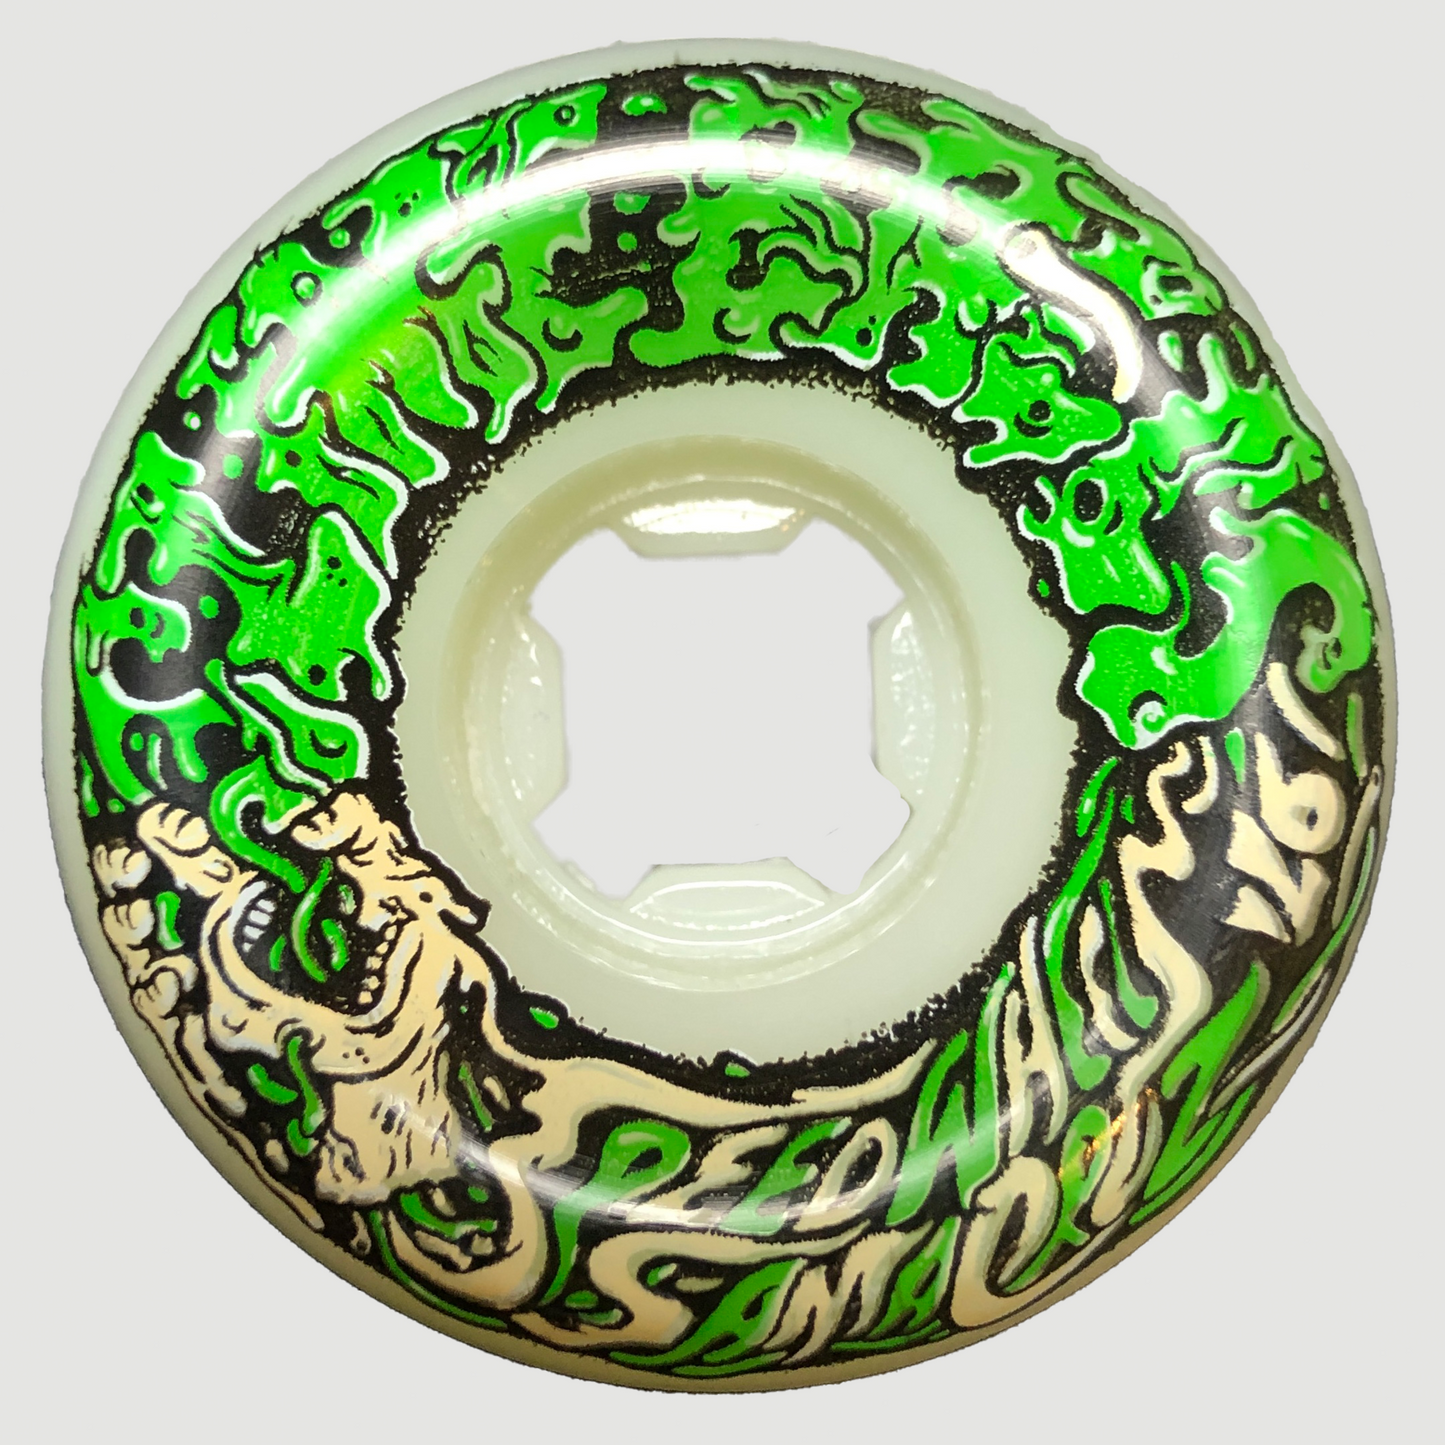 Slime Balls Vomit Mini White Green 97D Wheels 54mm